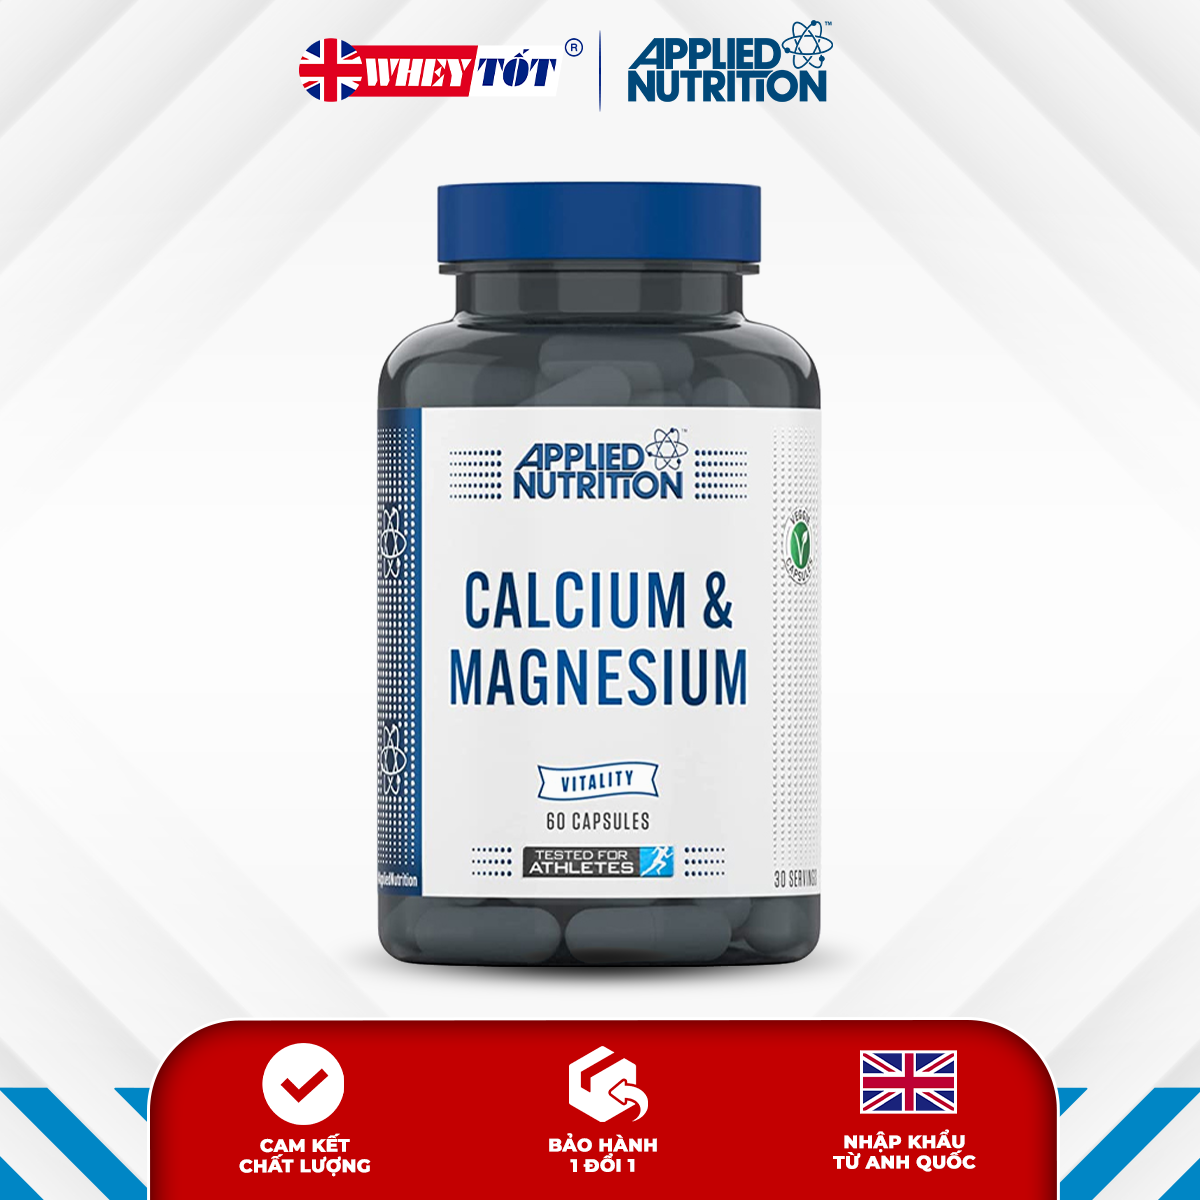 Viên uống Applied Nutrition Calcium Magnesium chắc xương